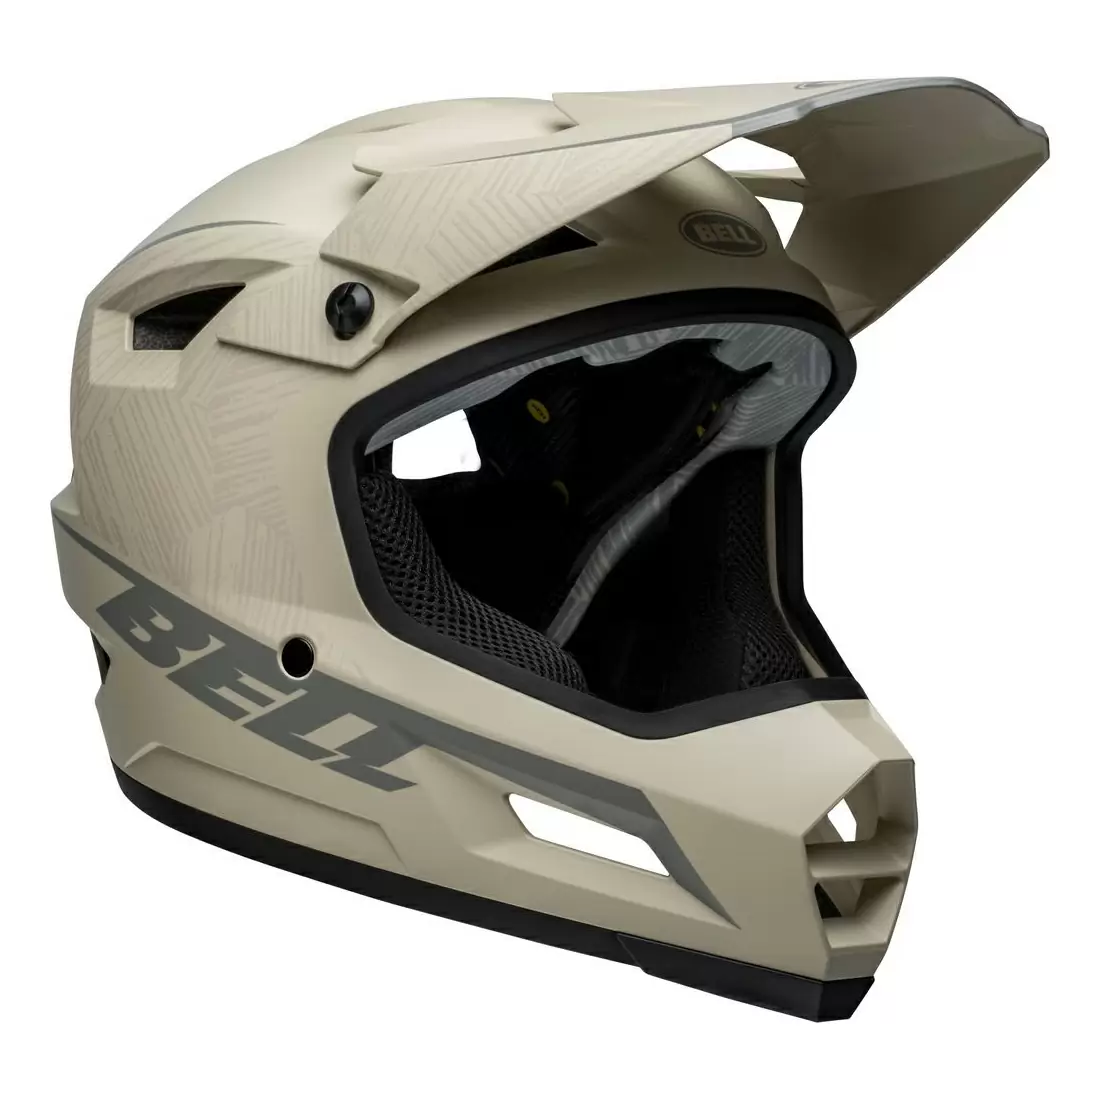 Sanction 2 DLX MIPS Full Face Helmet Gray Size L (57-59cm) #4